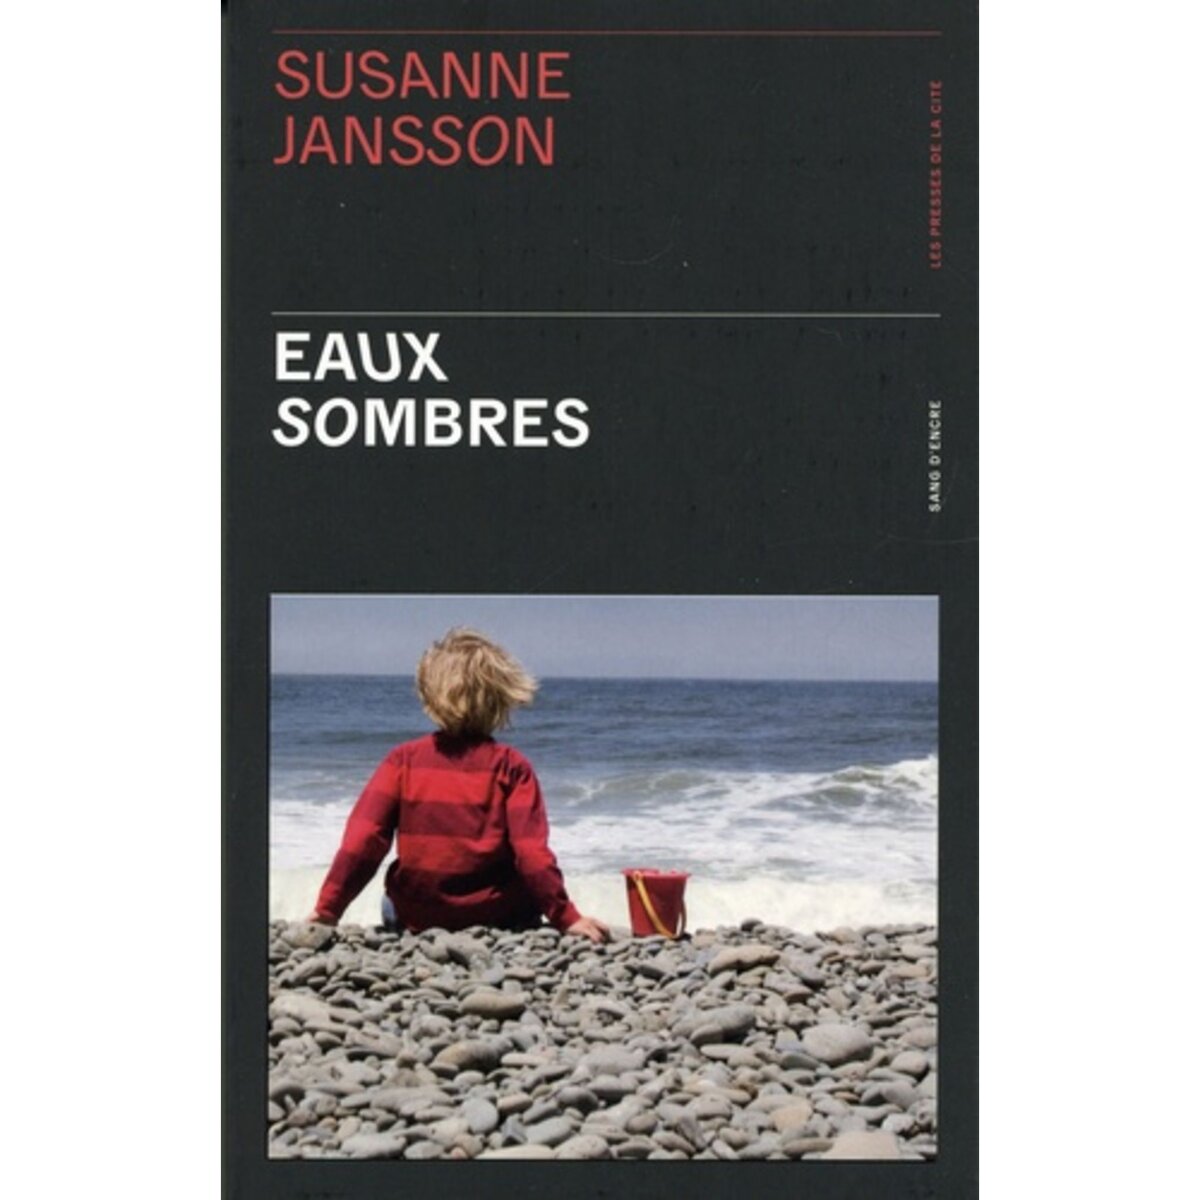  EAUX SOMBRES, Jansson Susanne